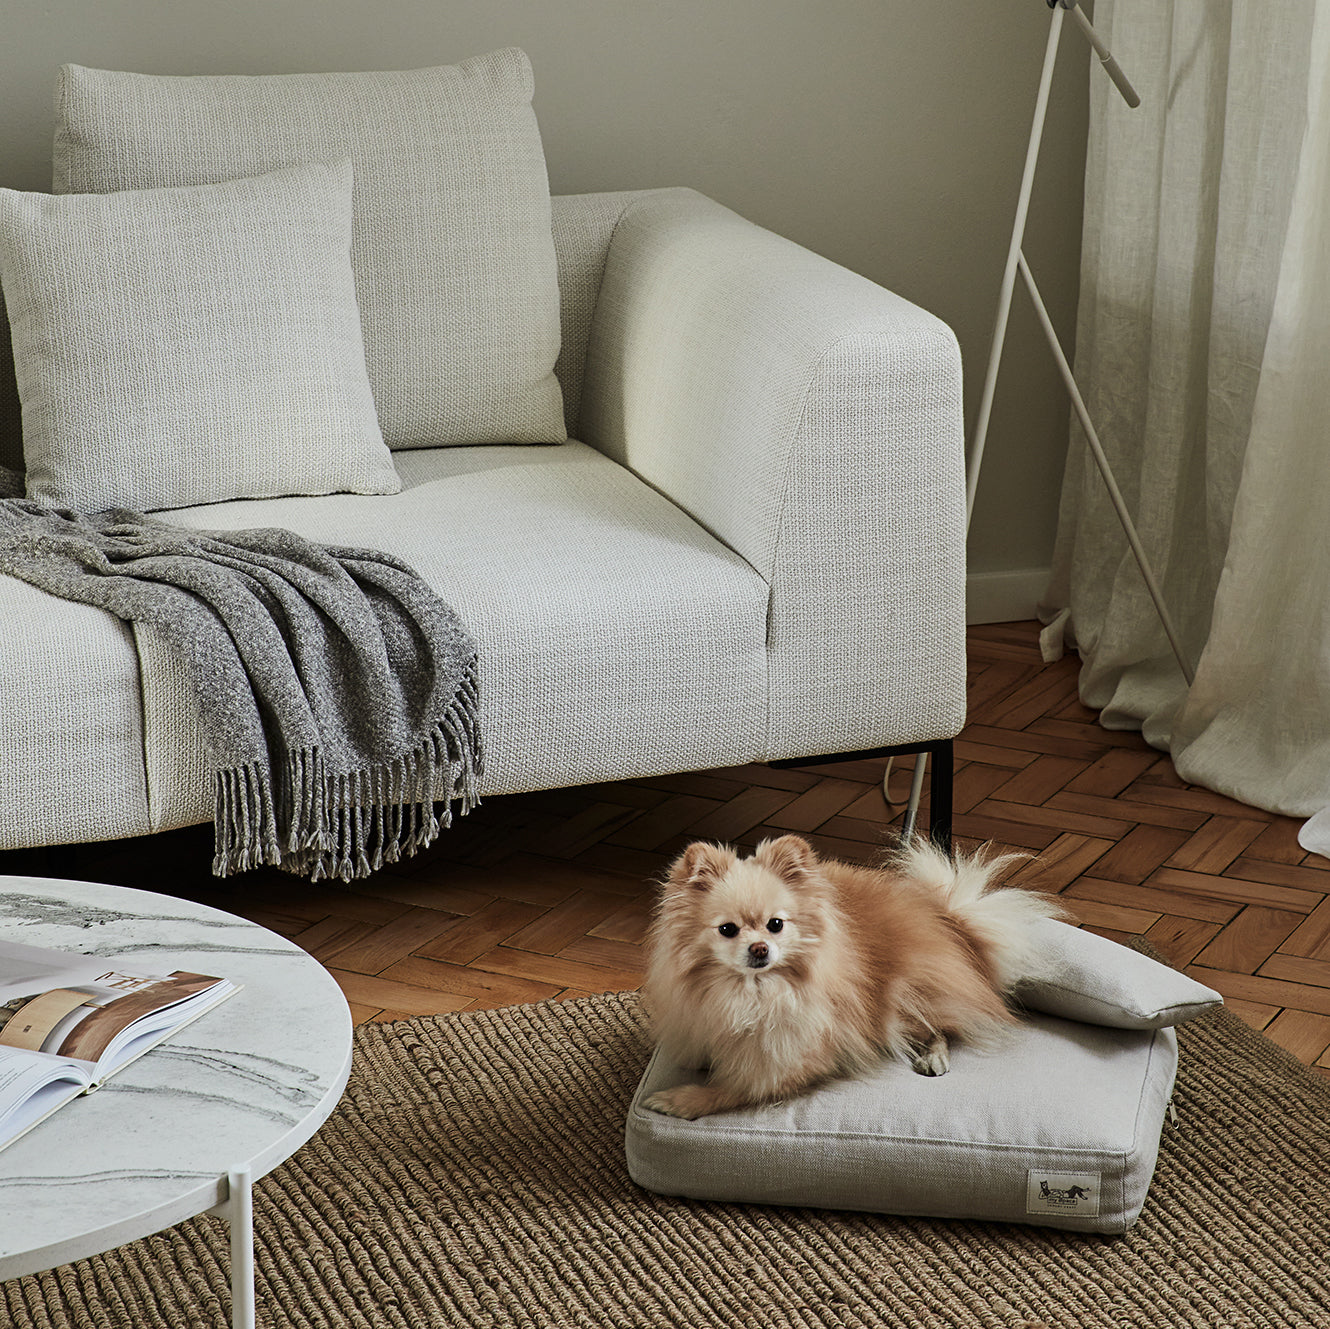 Handmade dog mattress filled with 100% alpaca fibre